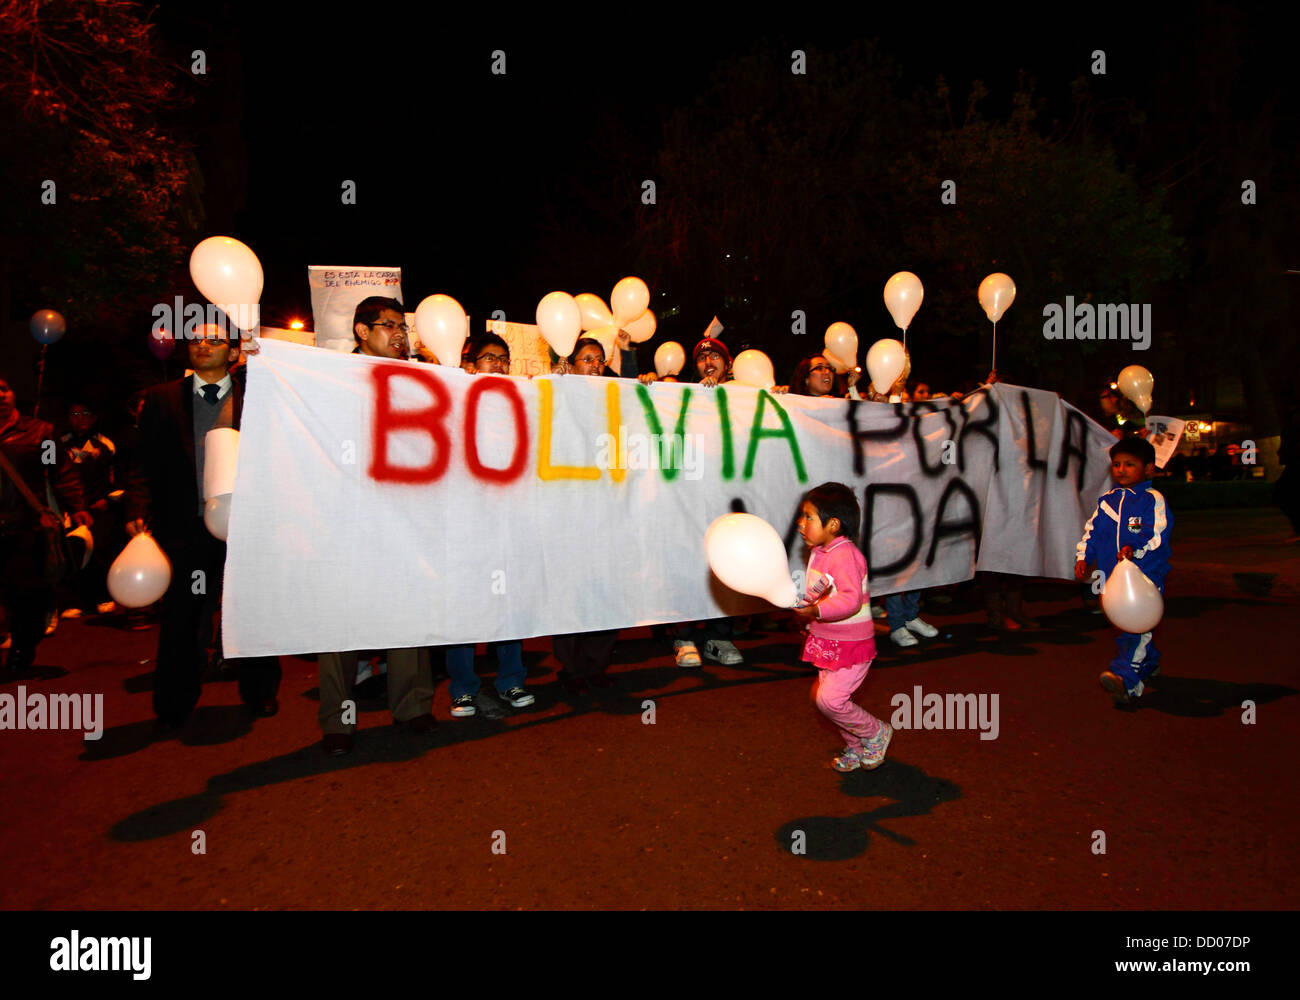 LA PAZ, BOLIVIEN, 22.. August 2013. Menschen nehmen an einem marsch Teil, der vom Roten Pro-Vida (Pro Life Network) organisiert wird, um gegen die Entkriminalisierung von Abtreibungen zu protestieren. Bolivien debattiert seit März 2012 über die Entkriminalisierung von Abtreibungen. Bild: James Brunker / Alamy Live News Stockfoto